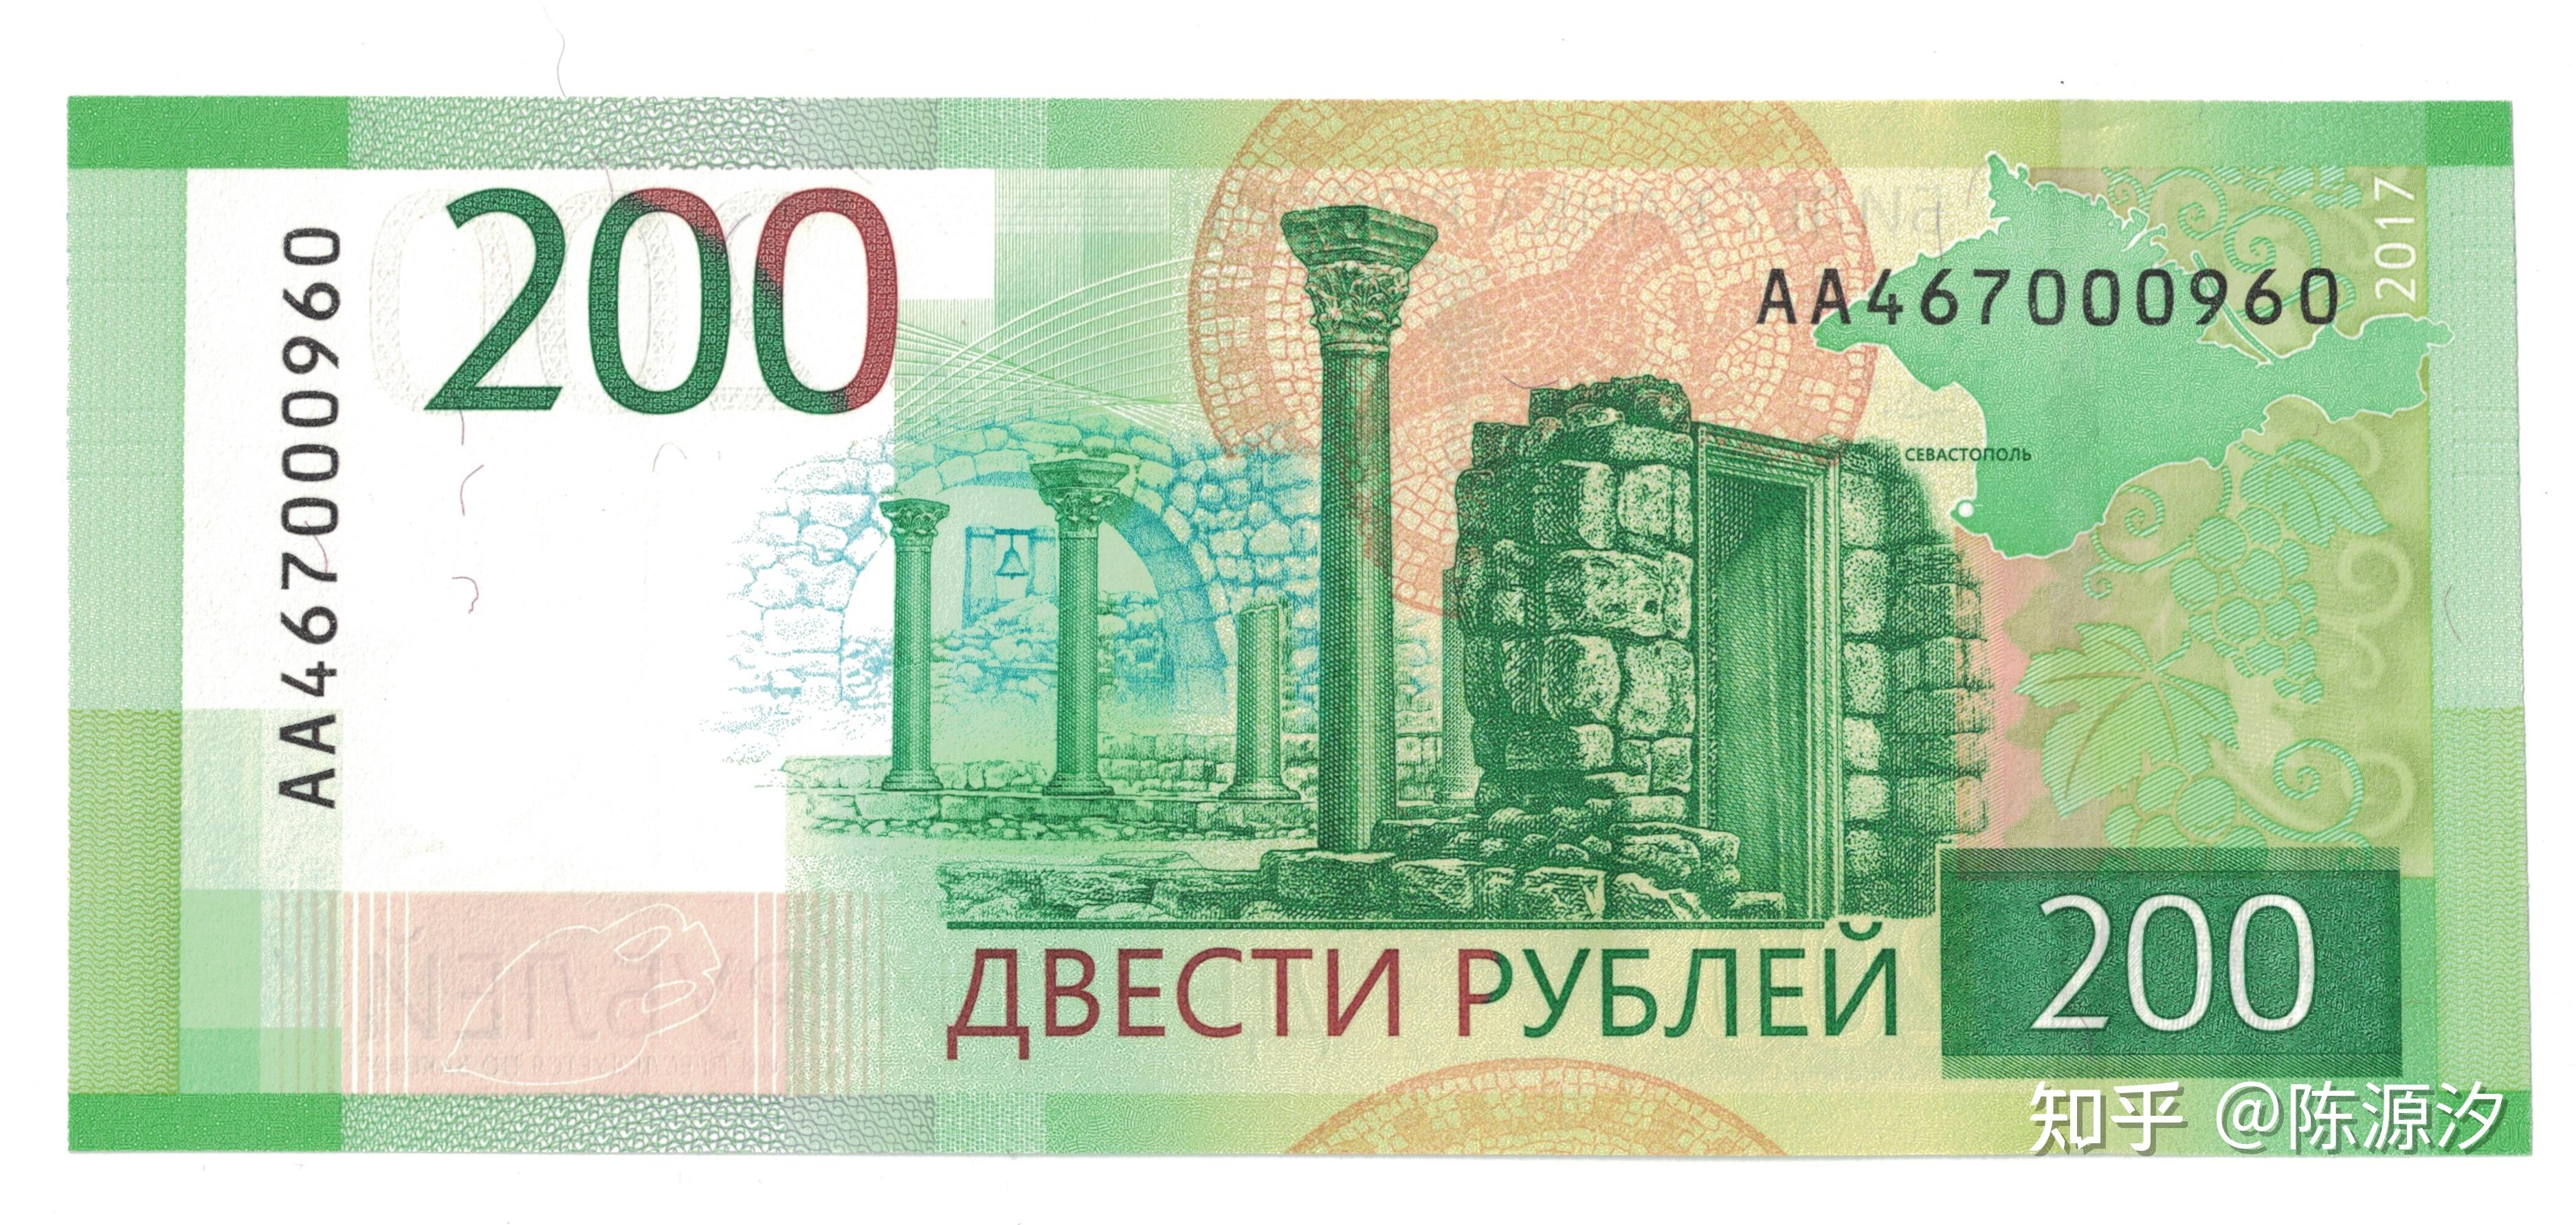 2017年,俄罗斯央行首先推出了两种新版新面额纸币——200与2000卢布